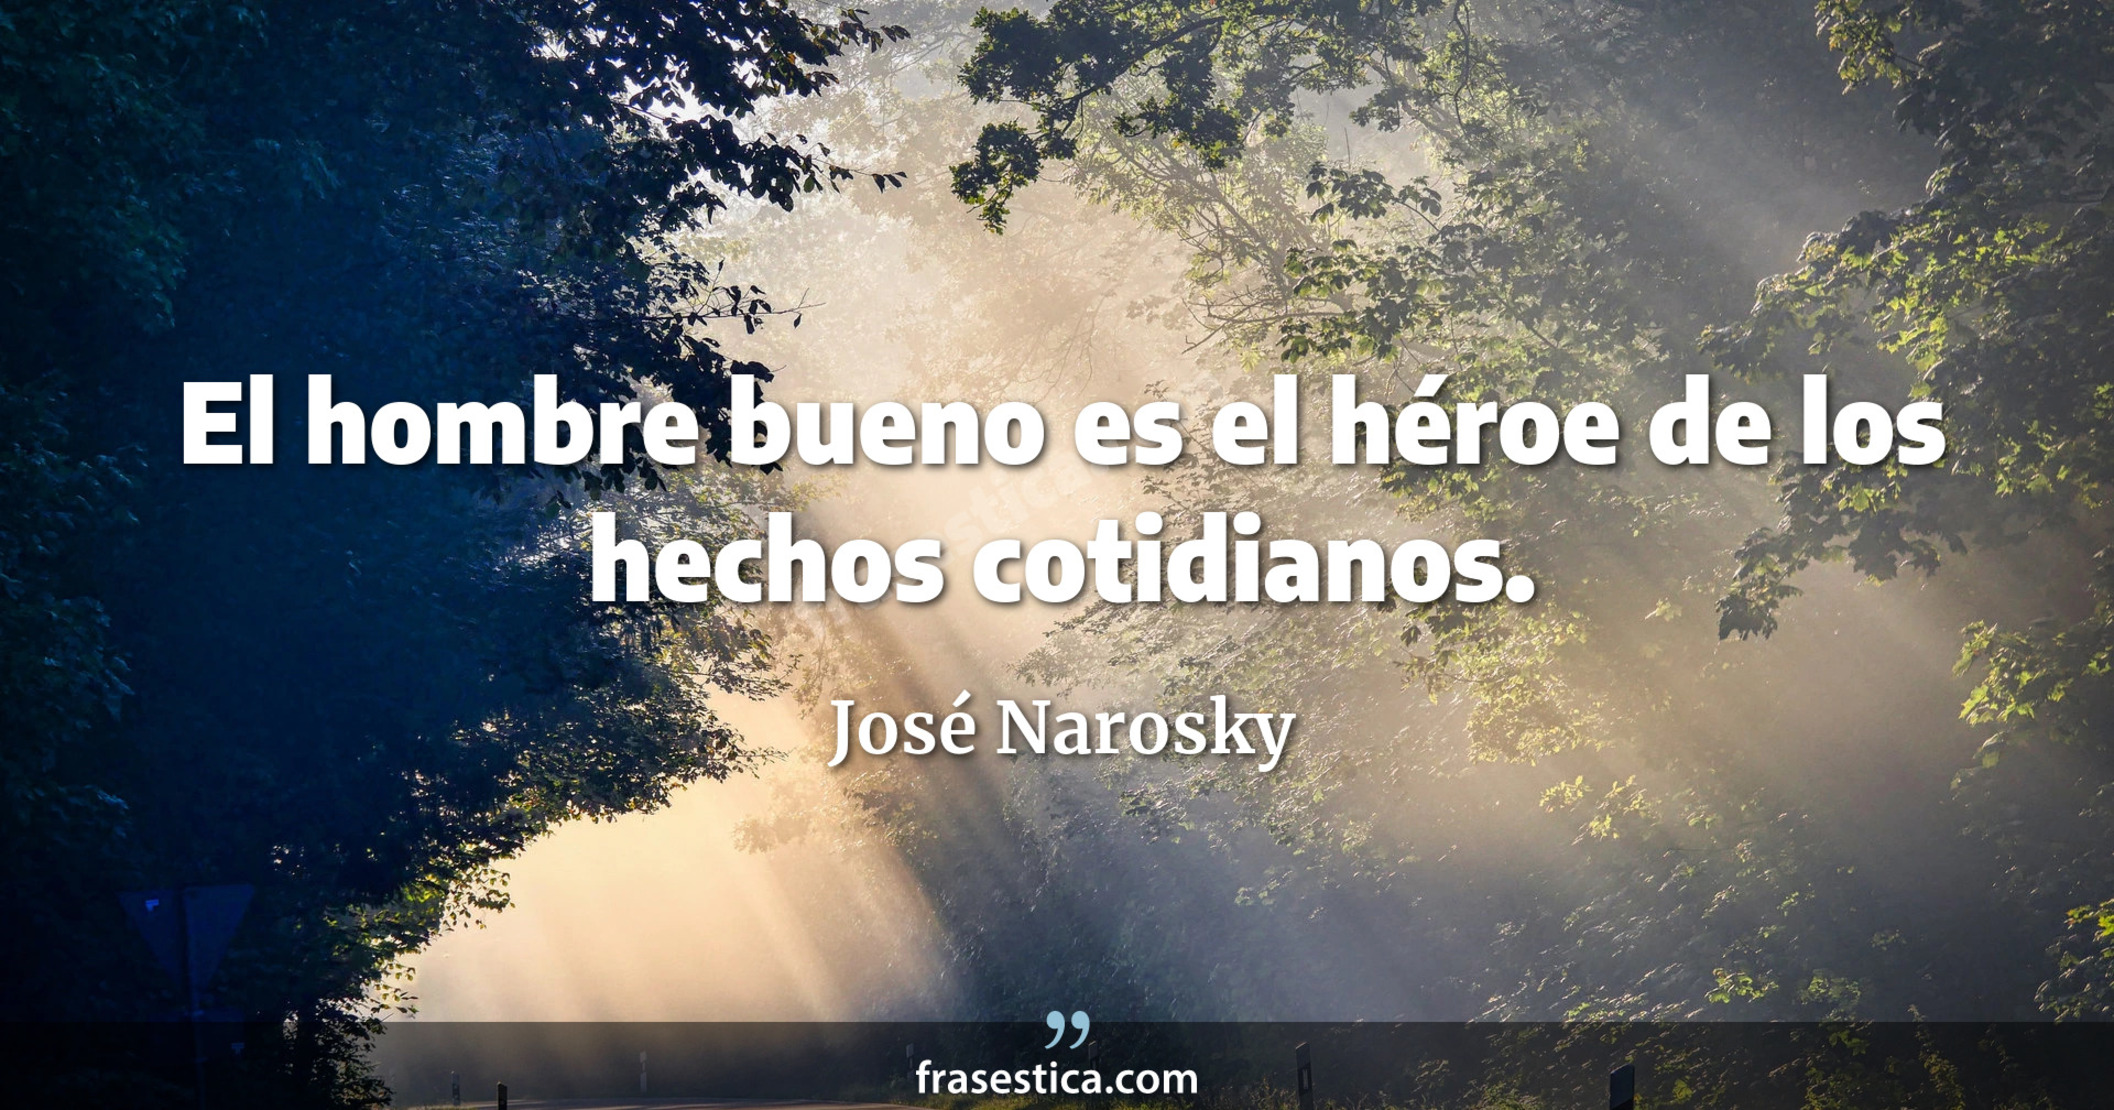 El hombre bueno es el héroe de los hechos cotidianos. - José Narosky